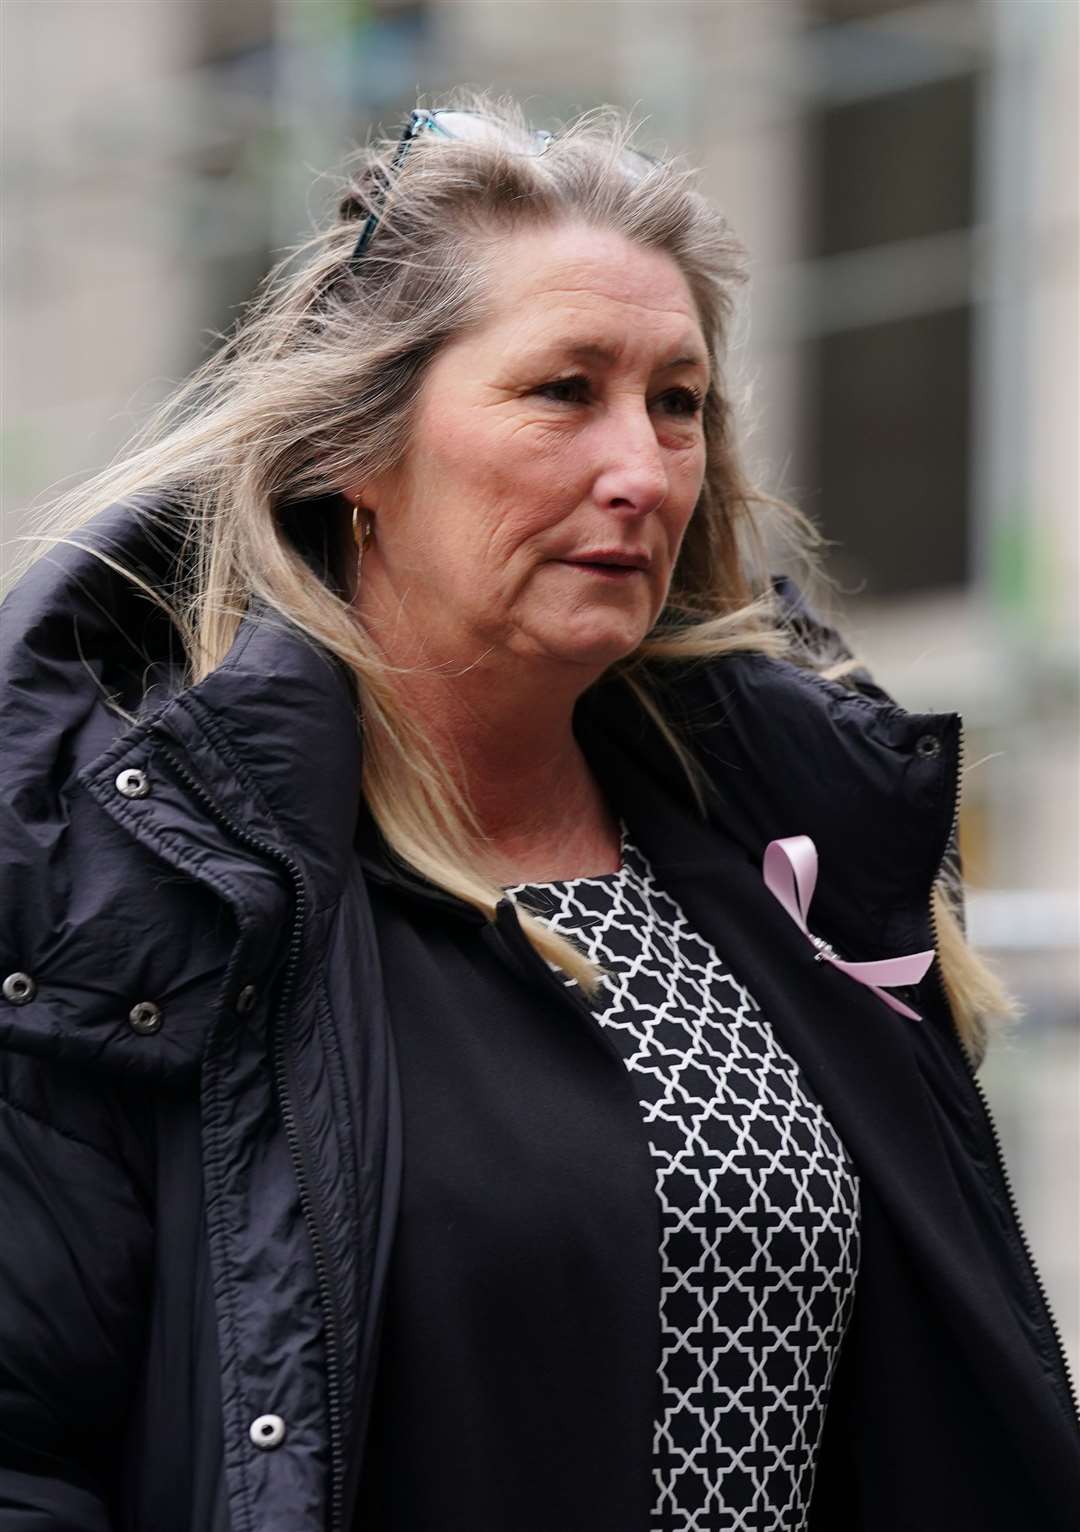 Cheryl Korbel, mother of nine-year-old Olivia Pratt-Korbel, arrives at Manchester Crown Court (PA)